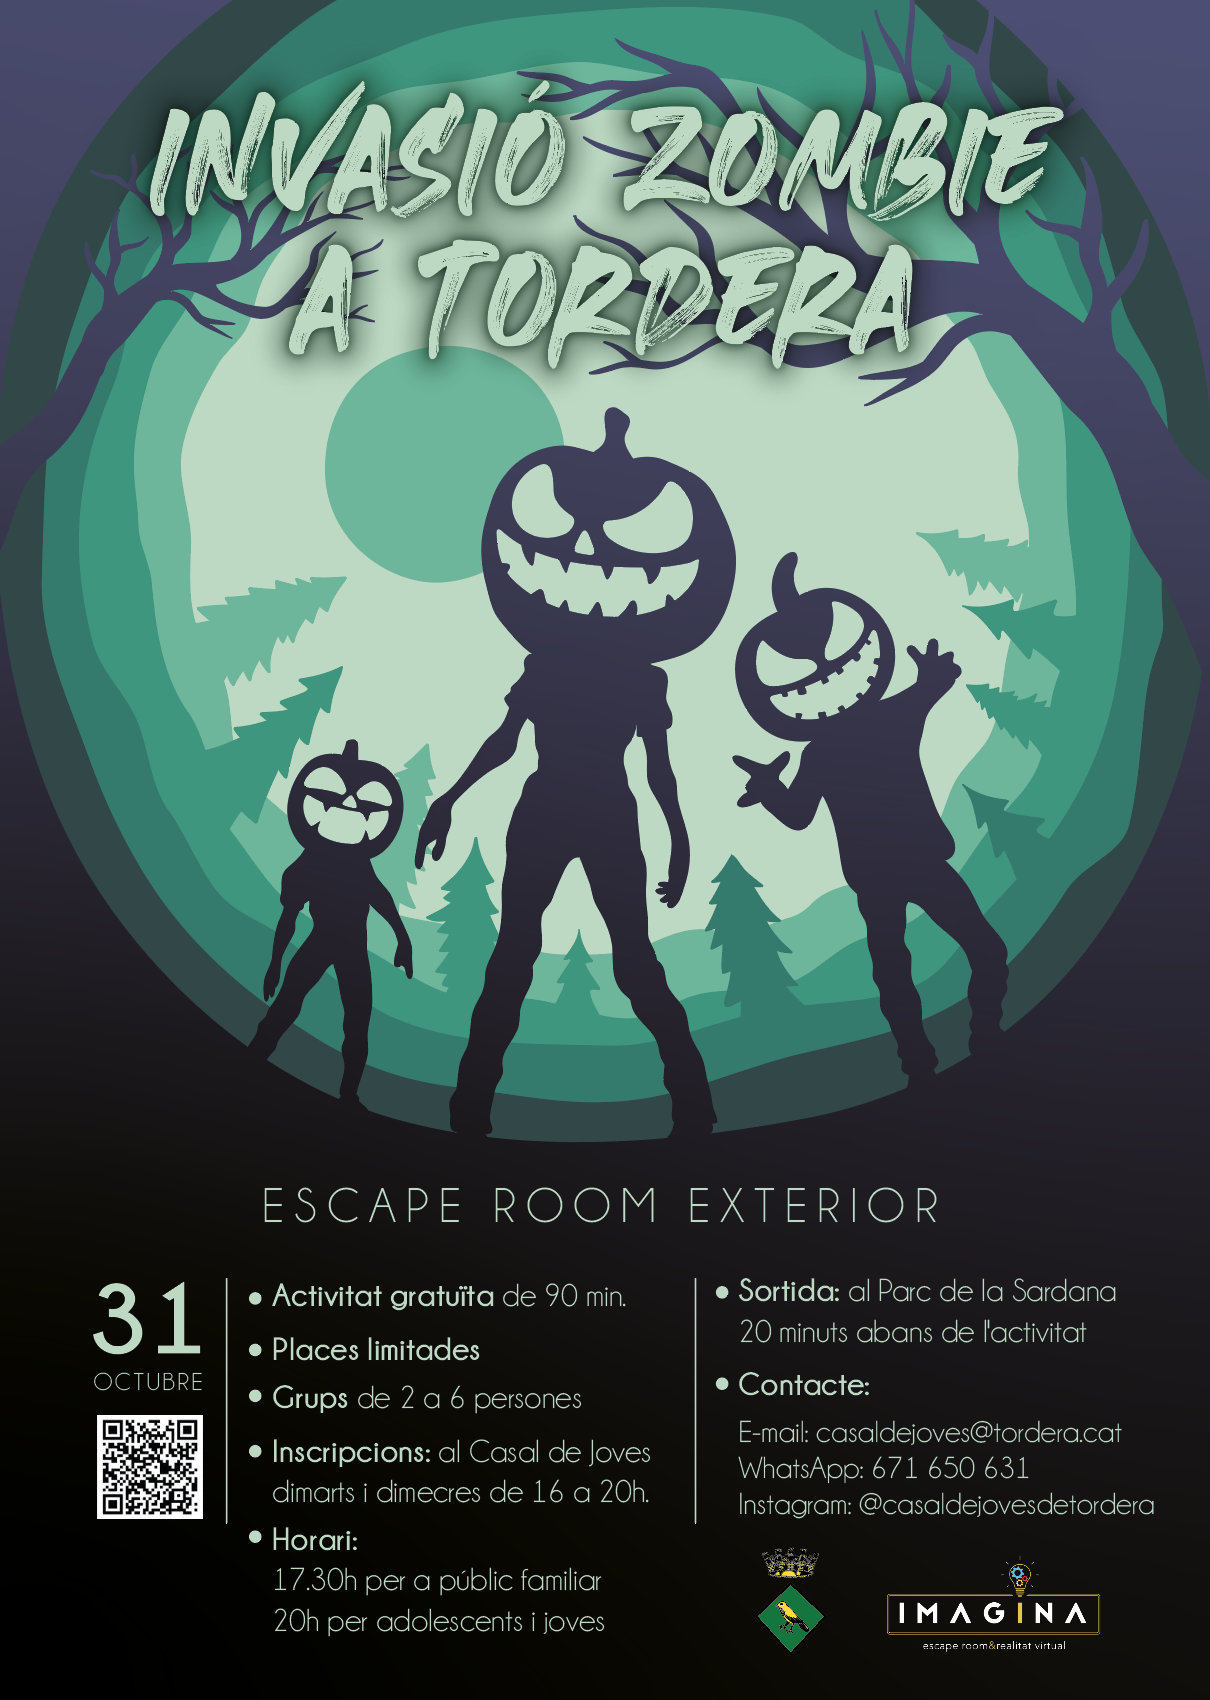 El Casal de Joves organitza per dilluns 31 d'octubre una invasió zombie a Tordera 